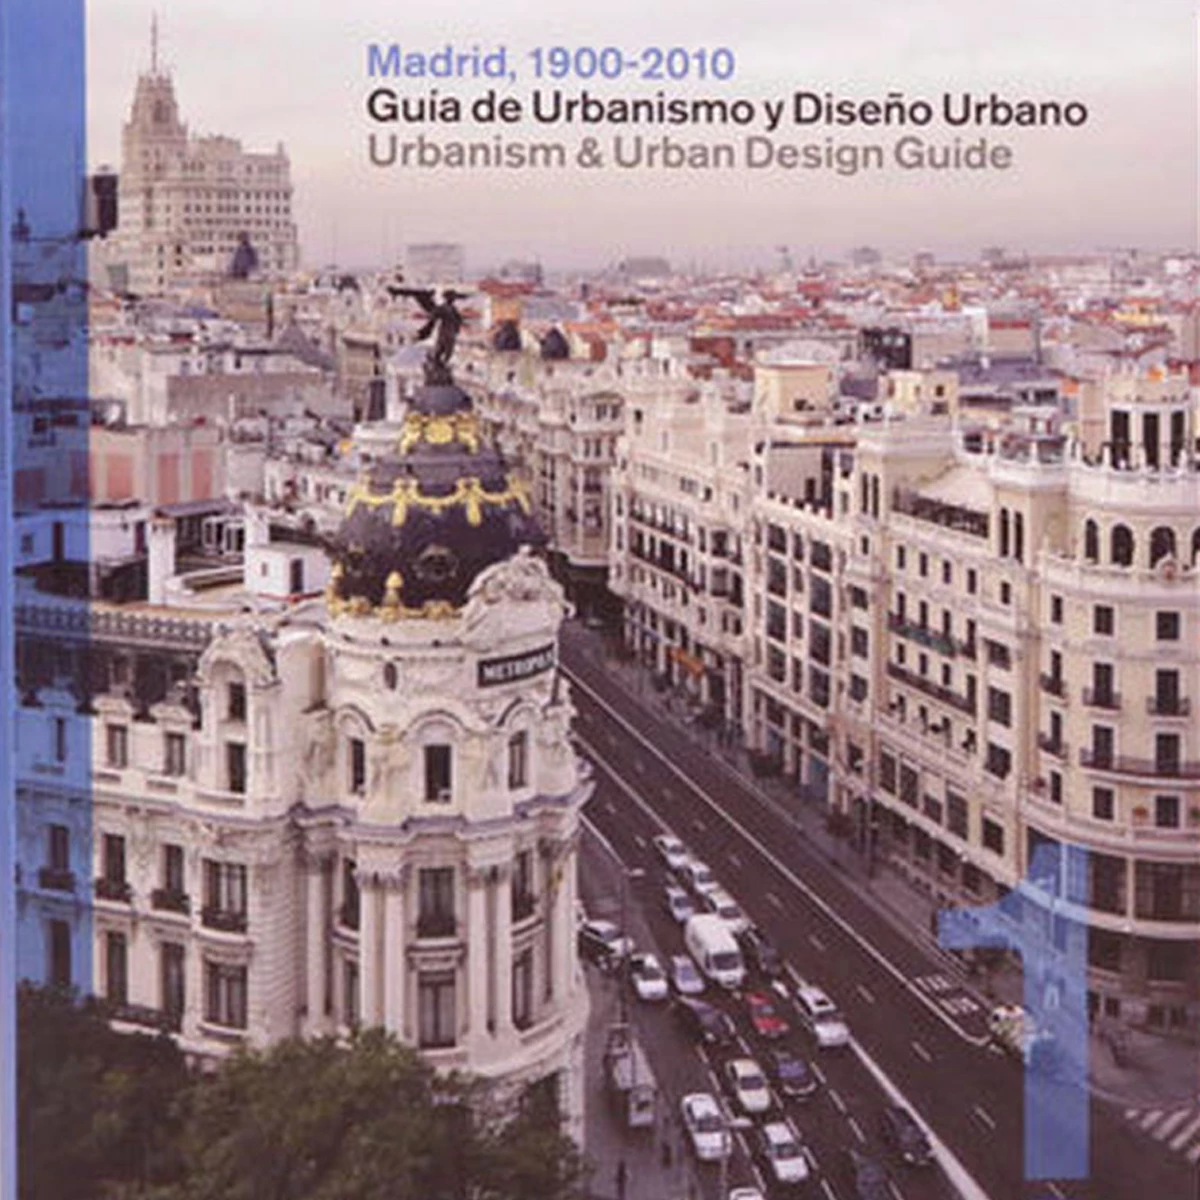 Madrid, 1900-2010. Guía de Urbanismo y Diseño Urbano